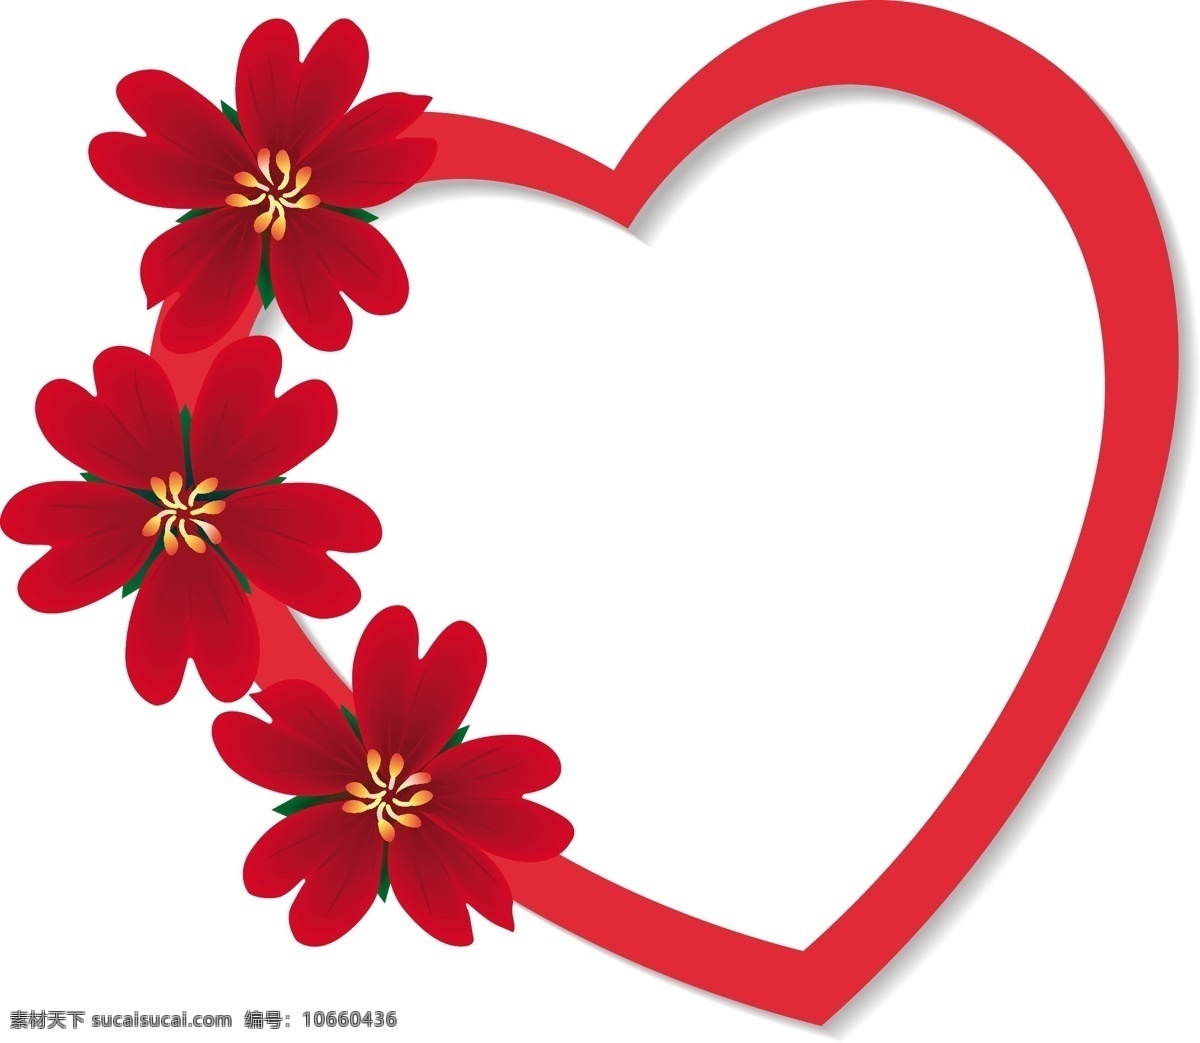 款 简单 精美 红色 花朵 装饰 心形 矢量 爱情 情人节 矢量节日 矢量图 花纹花边